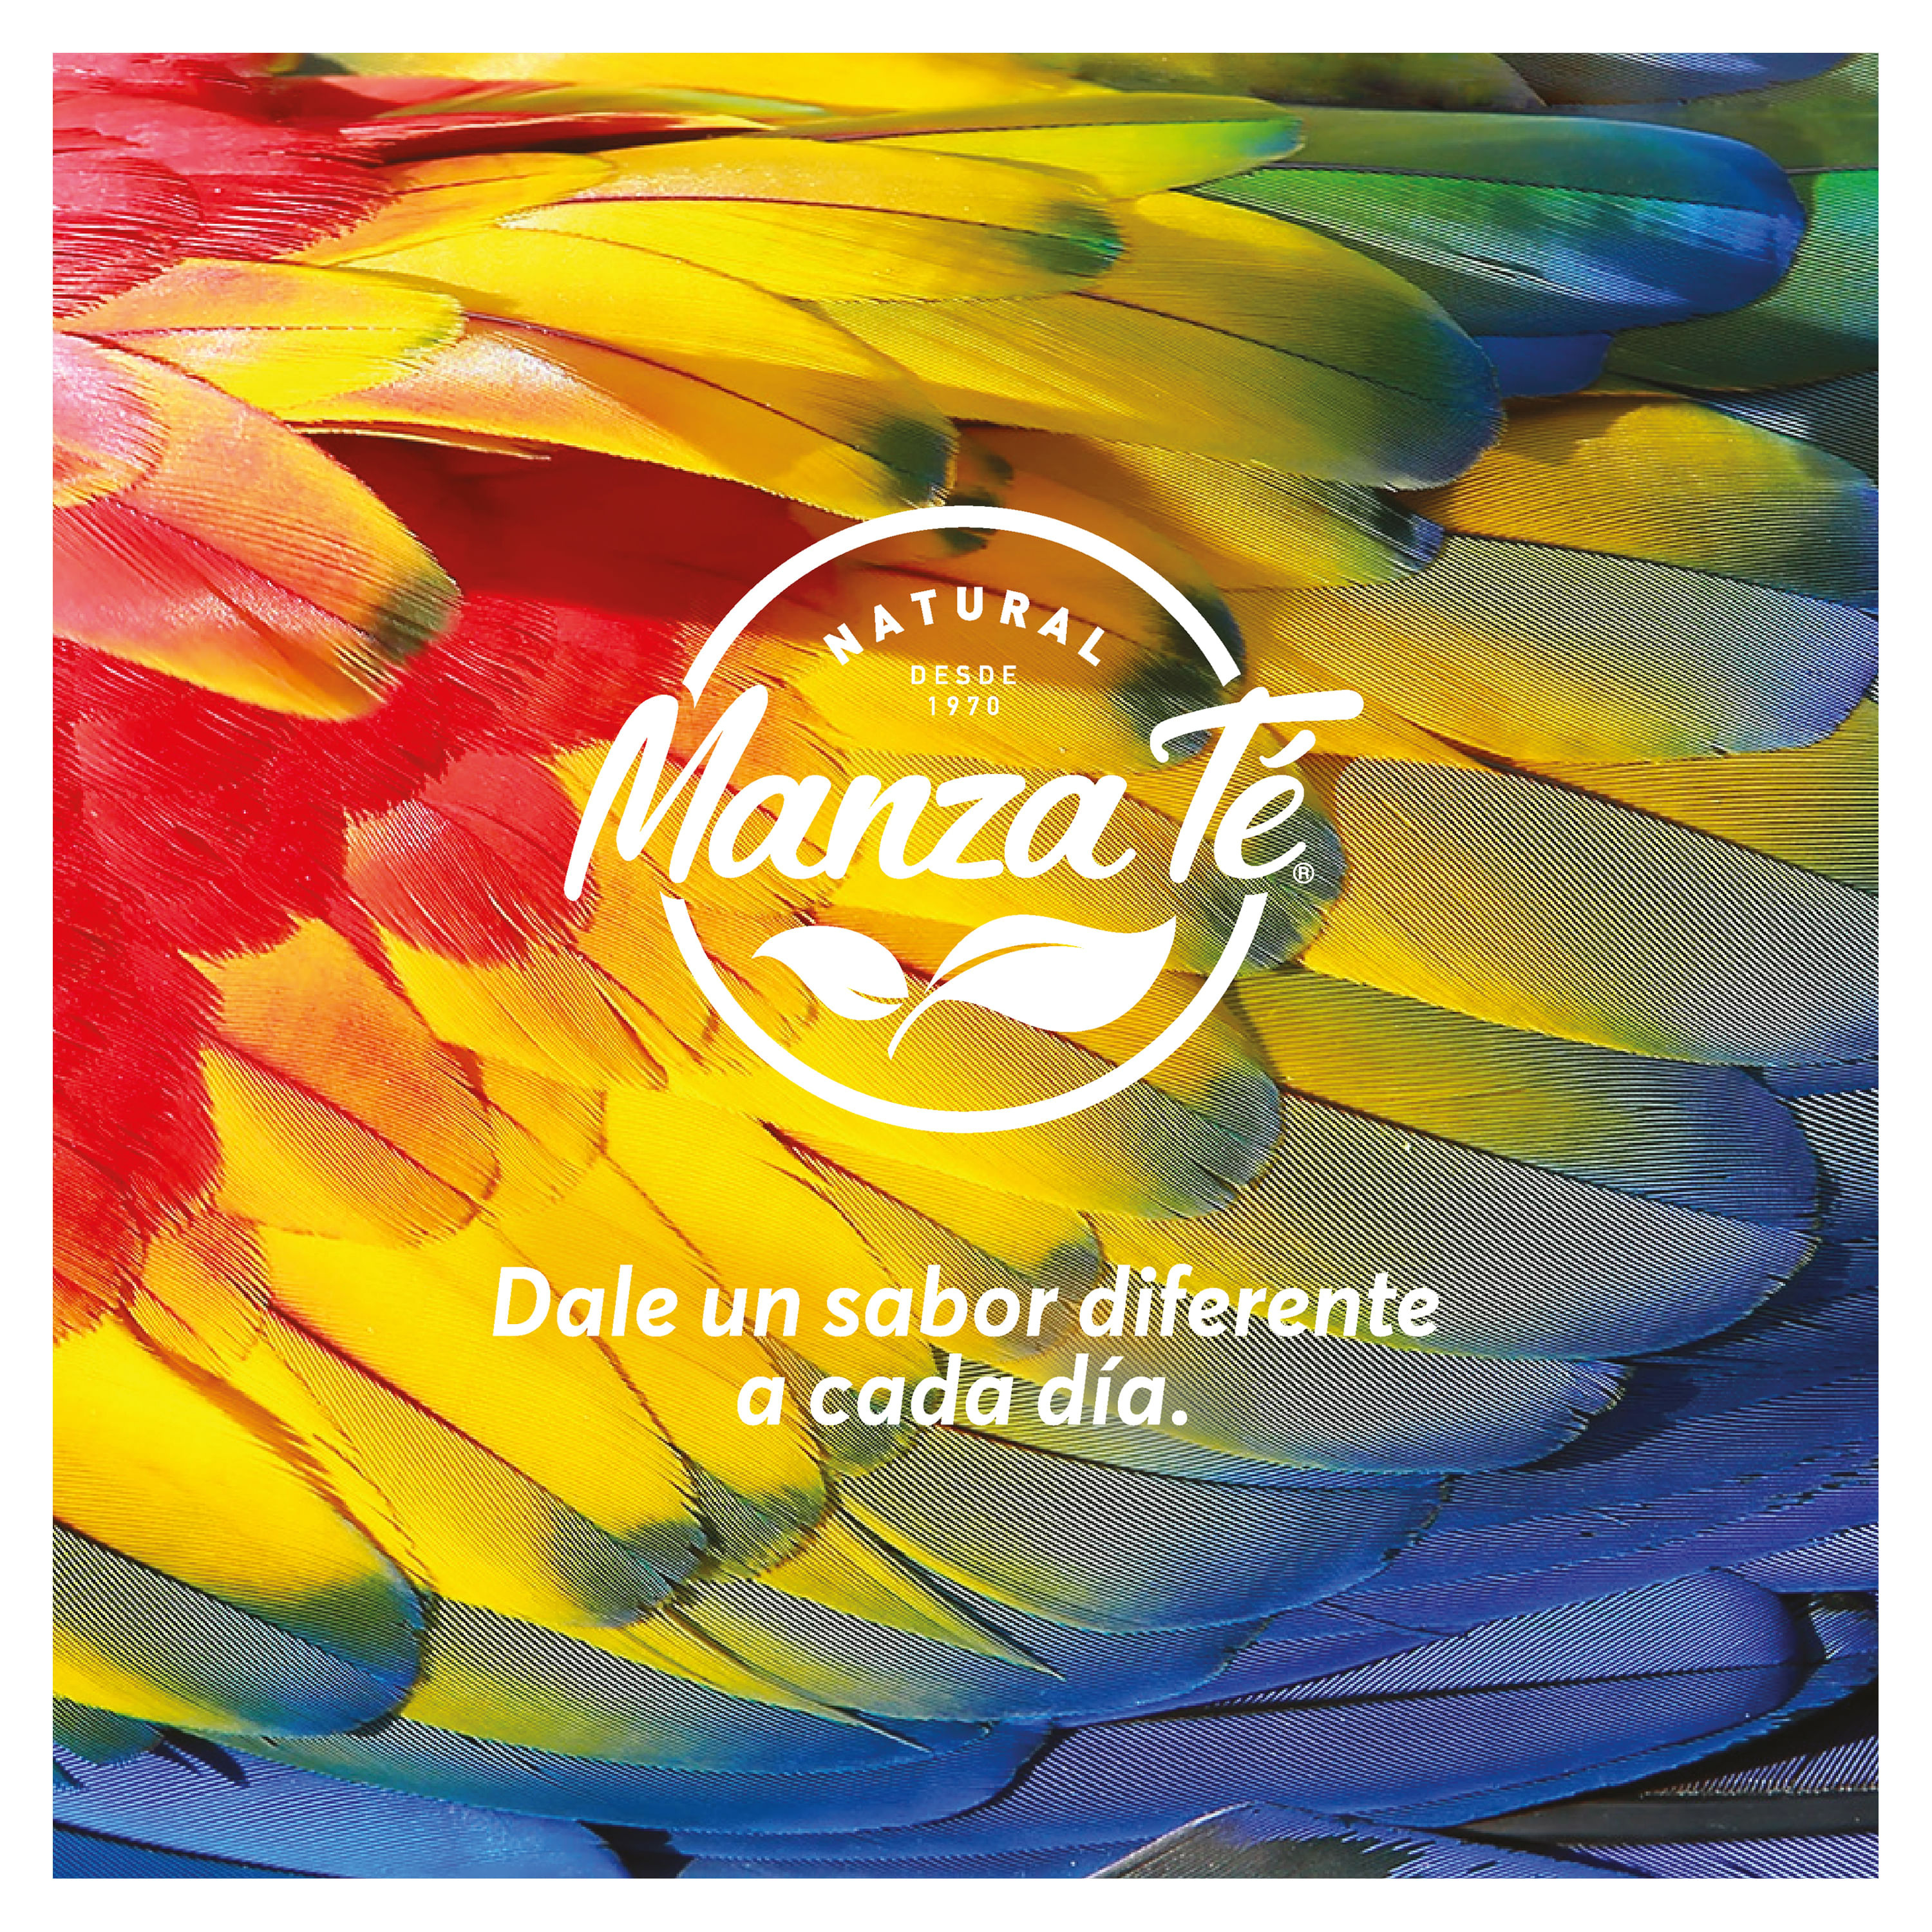 Manzanilla Anis – Manza Té